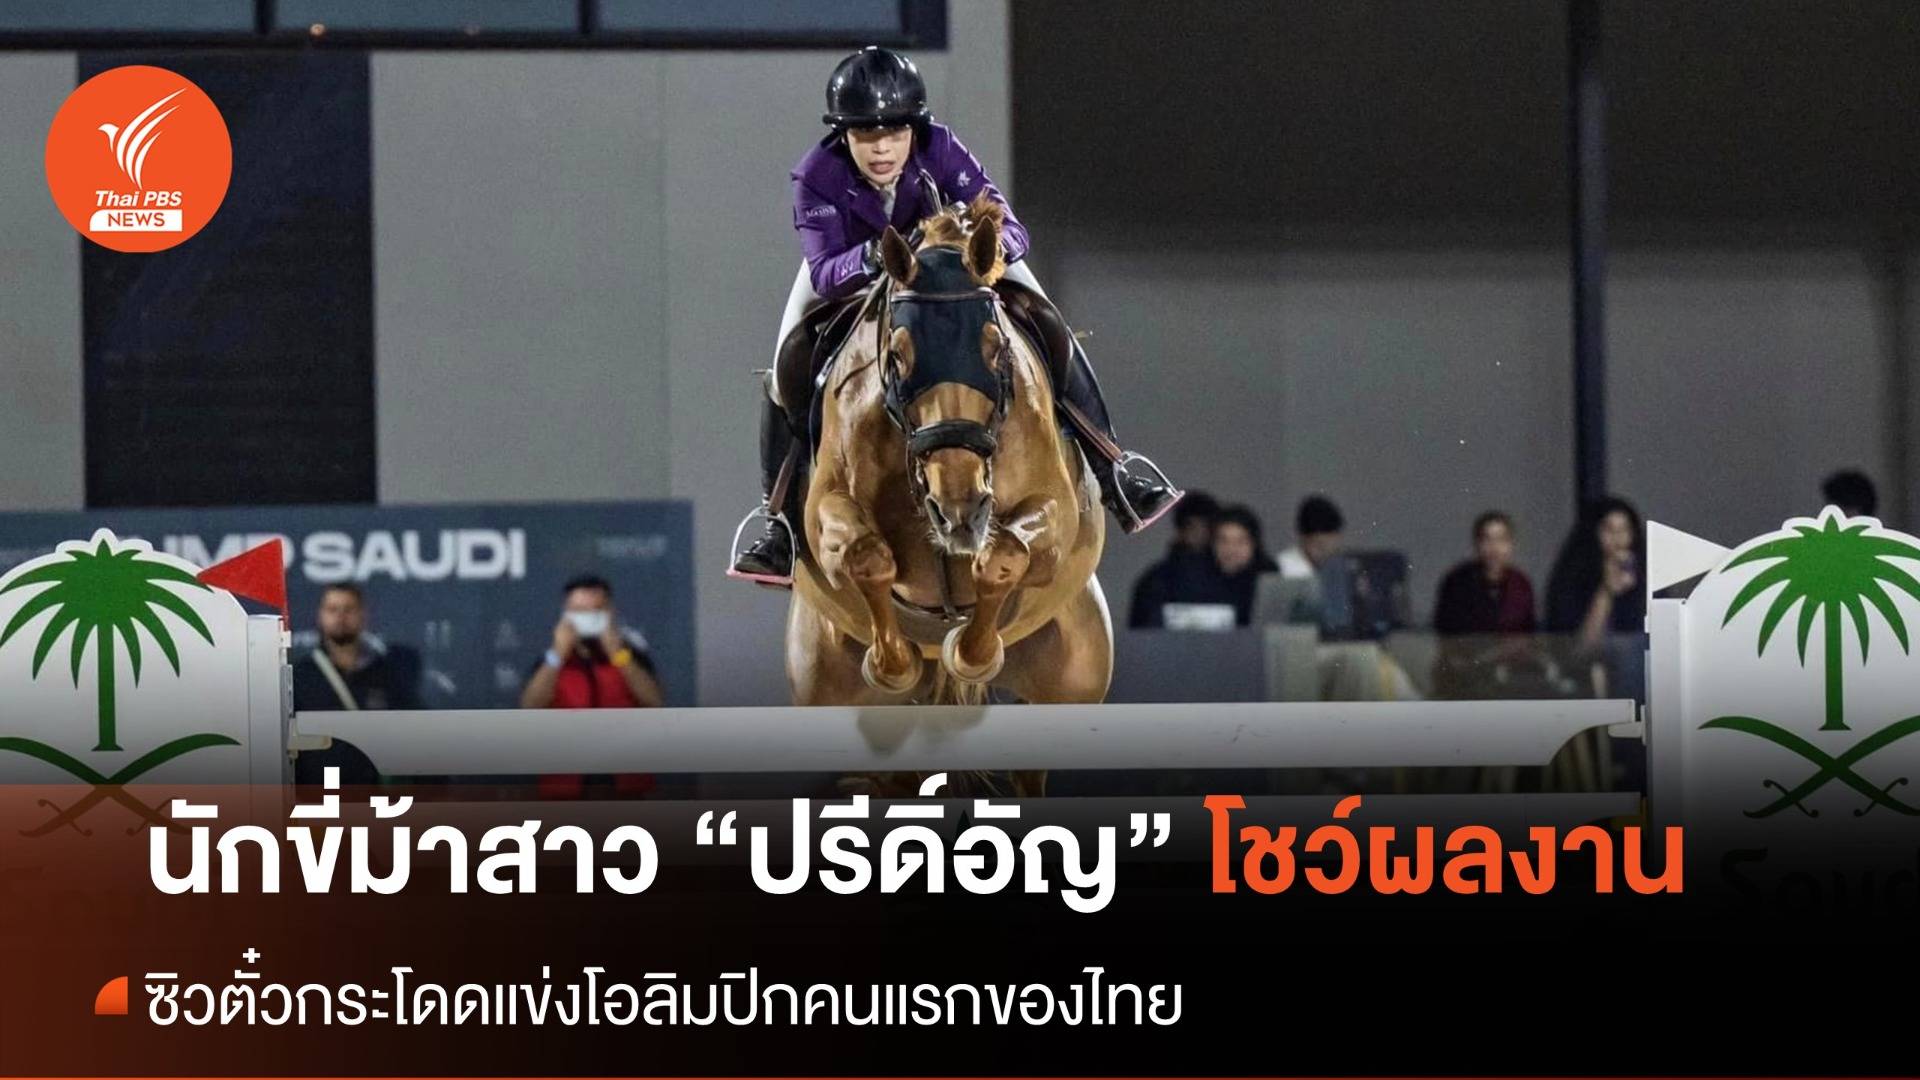 นักขี่ม้าสาว “ปรีดิ์อัญ” สร้างประวัติศาสตร์ ซิวตั๋วกระโดดแข่งโอลิมปิกคนแรกของไทย